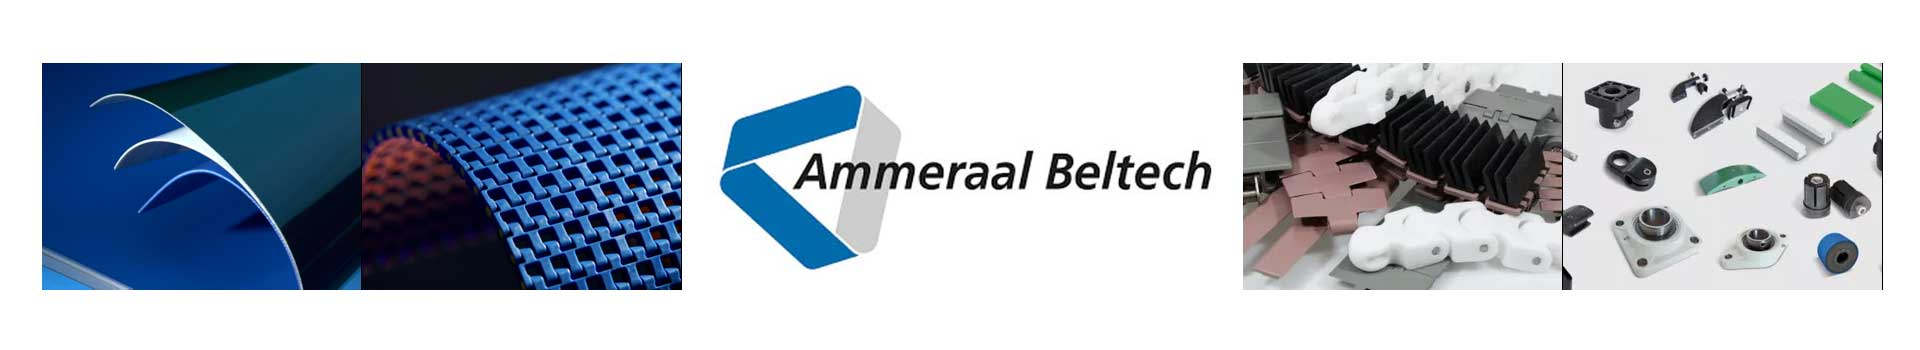 荷兰Ammeraal Beltech艾玛拉